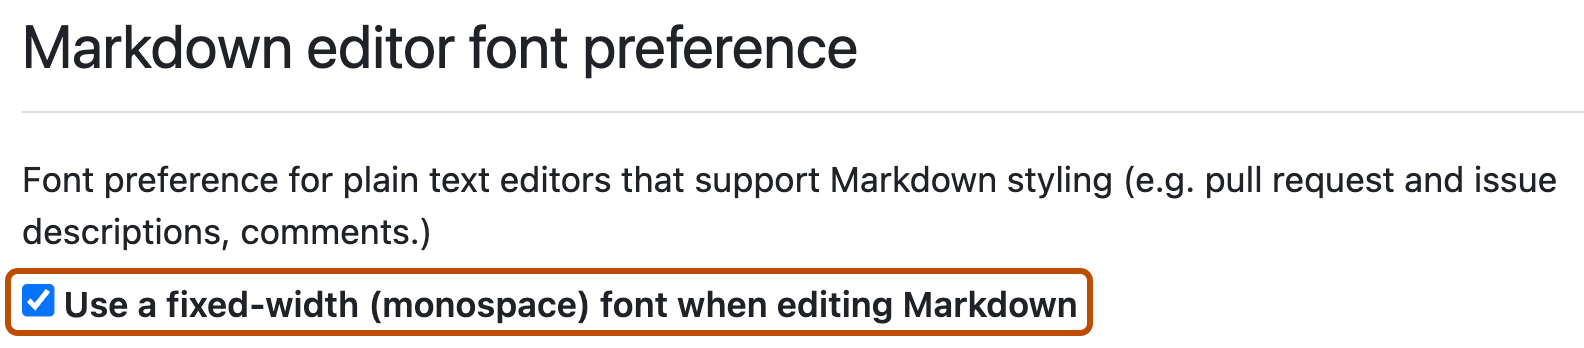 Capture d’écran des paramètres utilisateur GitHub pour la préférence de Markdown. La case à cocher permettant d’utiliser une police à largeur fixe dans le Markdown est cochée et tracée en orange foncé.